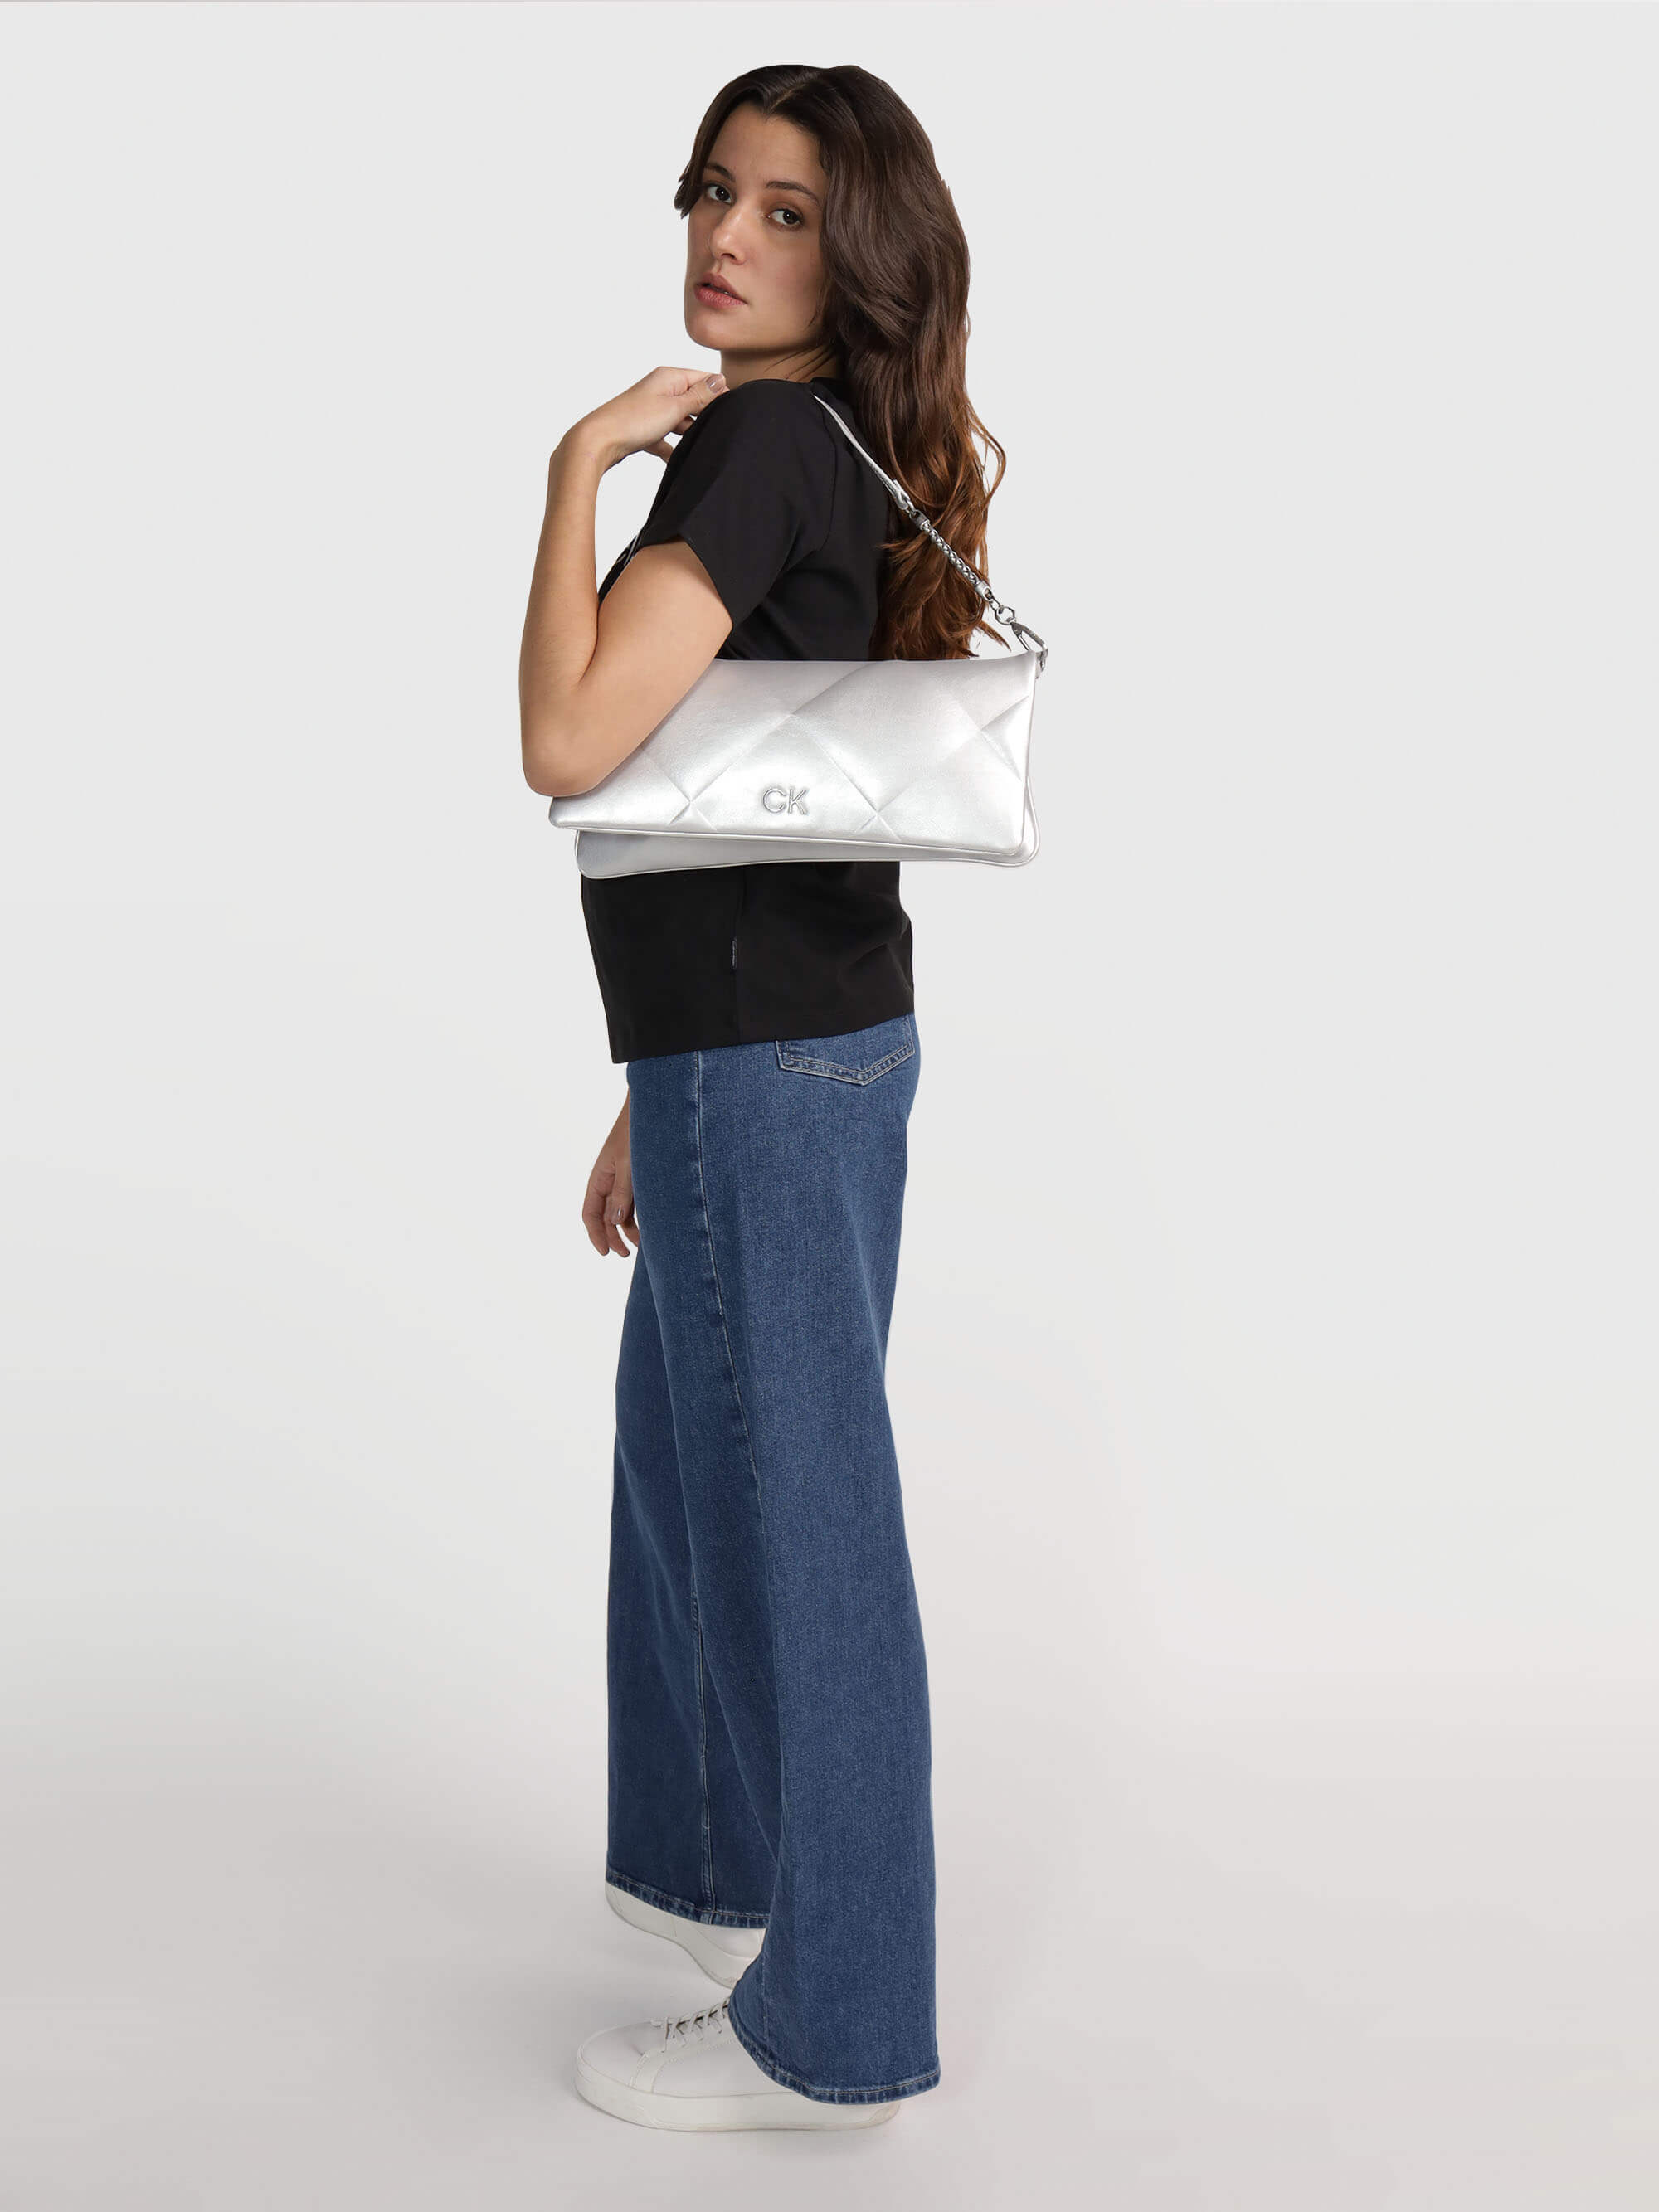 Clutch Calvin Klein con Monograma Mujer Plateado - Talla: Única